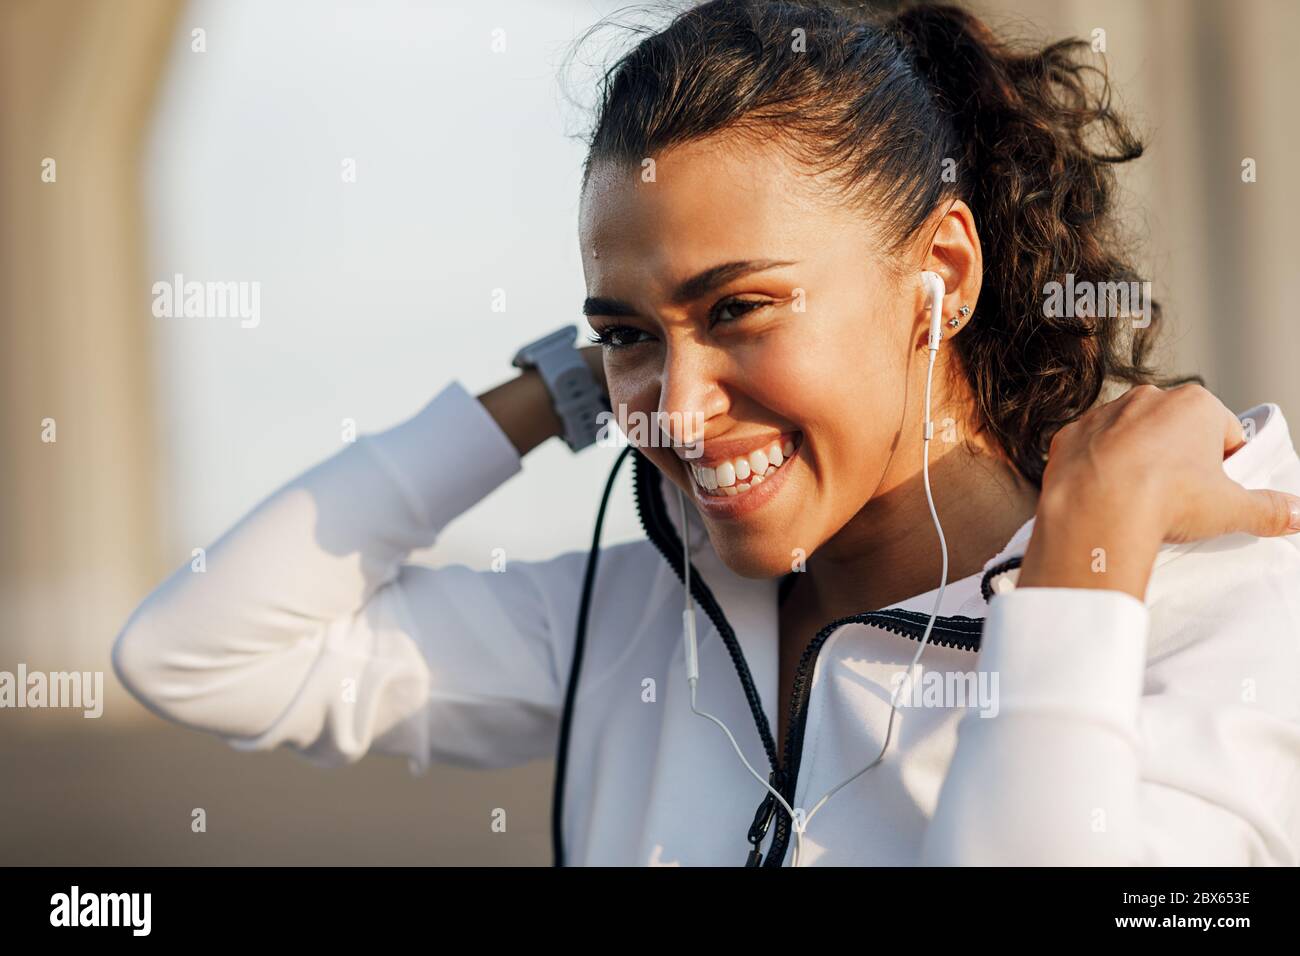 Ritratto di una giovane donna che indossa una felpa con cappuccio e sorride dopo un allenamento Foto Stock